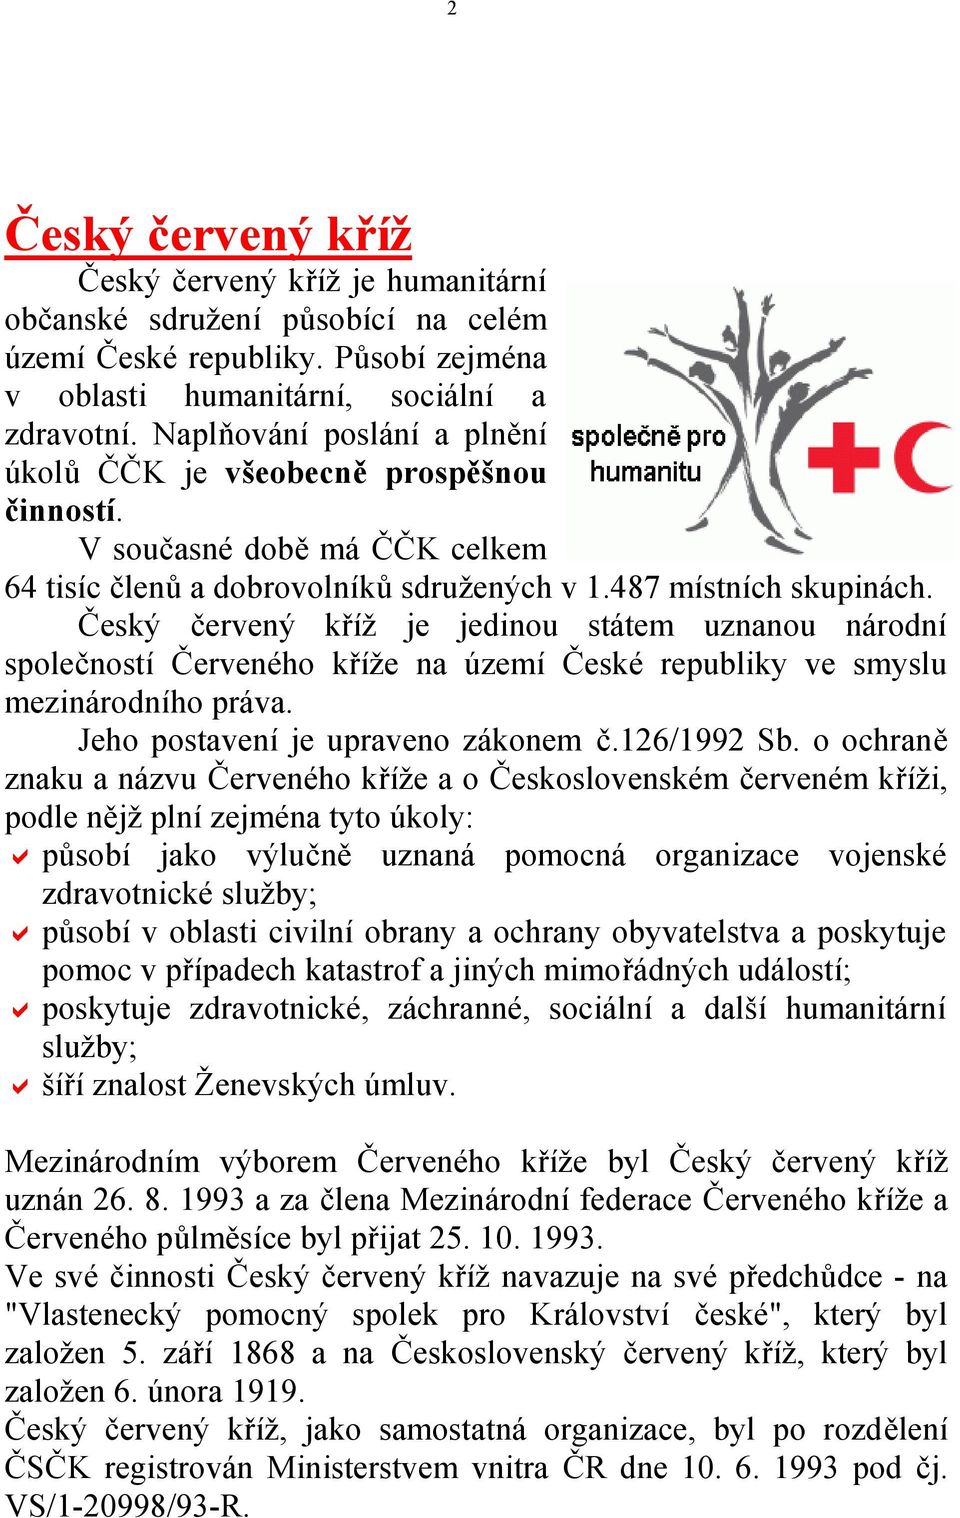 Český červený kříž je jedinou státem uznanou národní společností Červeného kříže na území České republiky ve smyslu mezinárodního práva. Jeho postavení je upraveno zákonem č.126/1992 Sb.